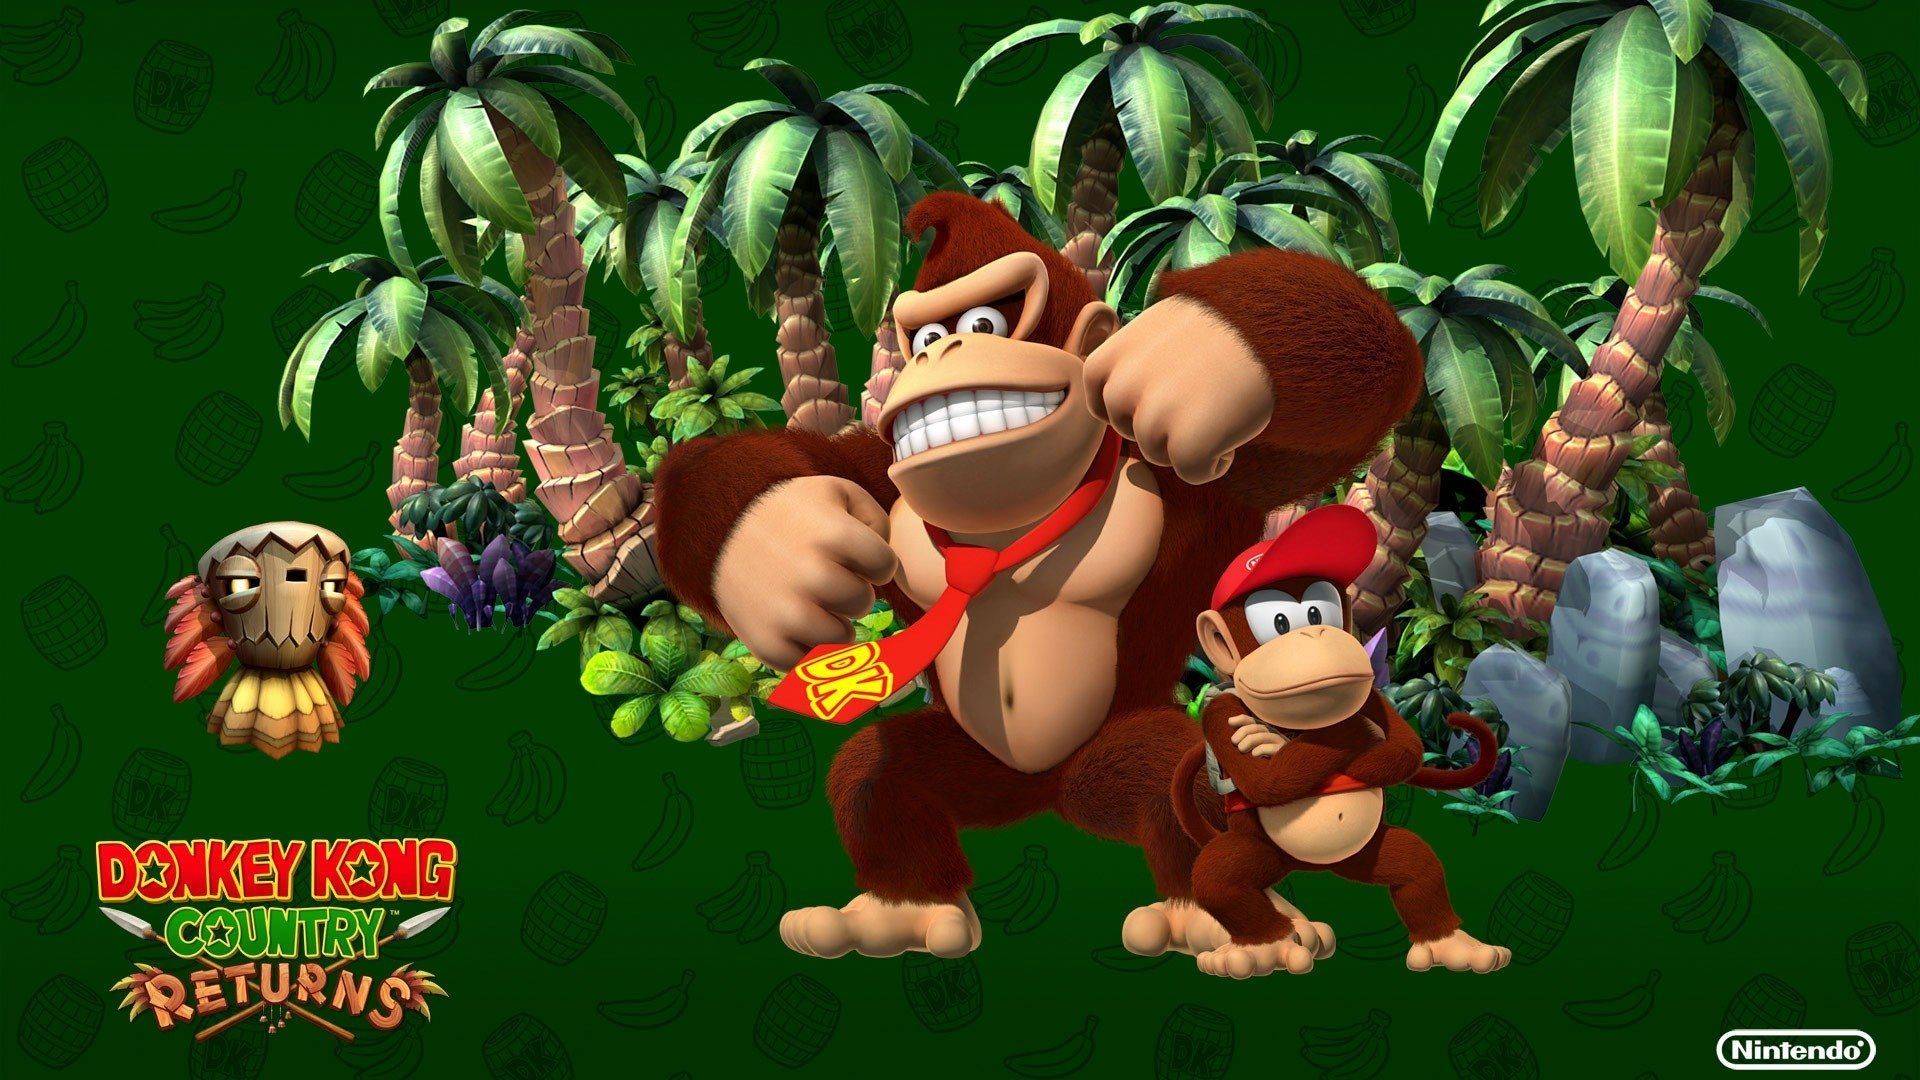 Donkey Kong Wallpaper Free Donkey Kong Background